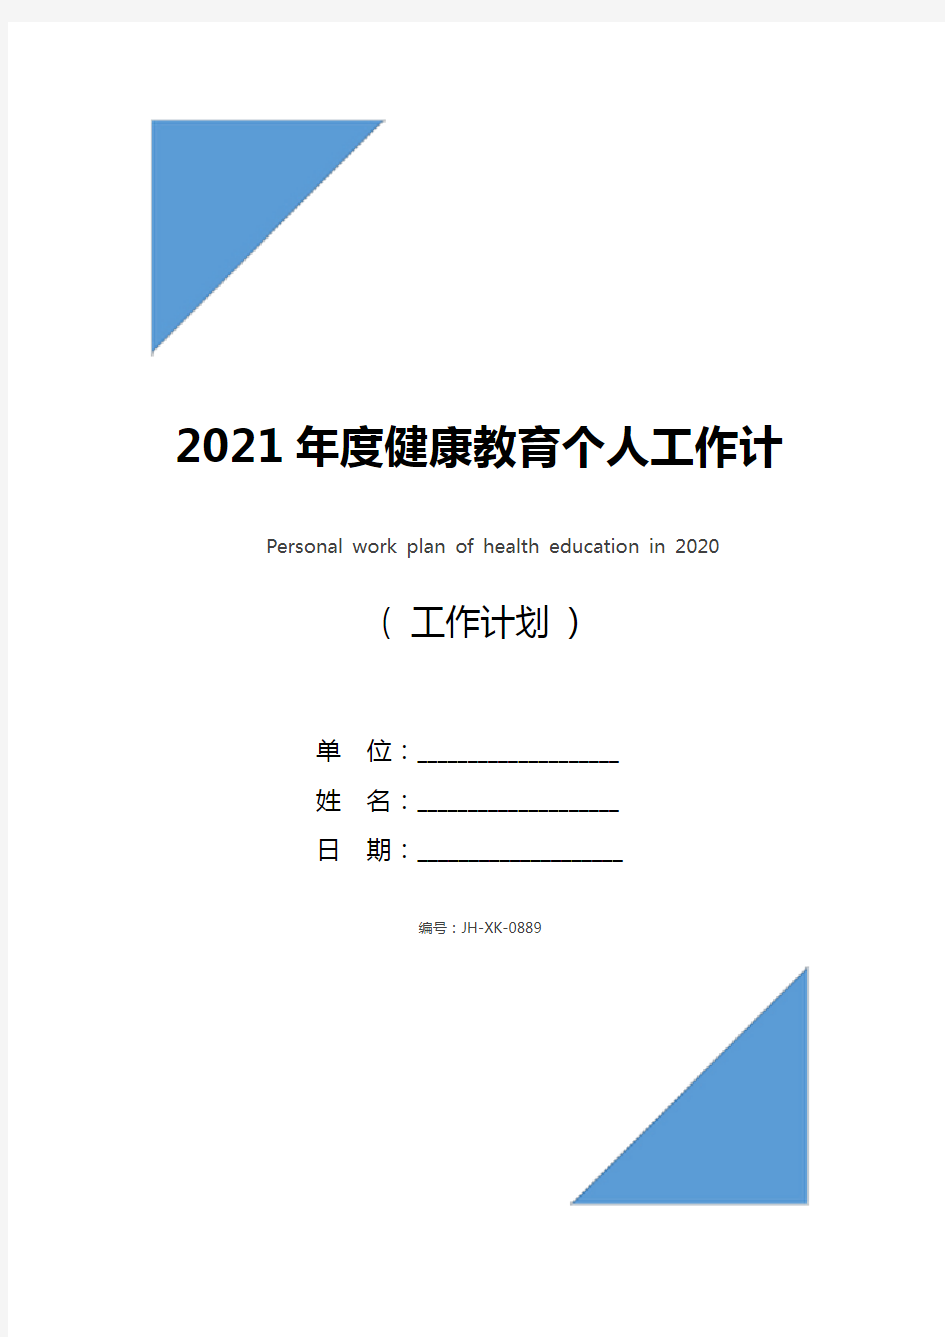 2021年度健康教育个人工作计划(标准版)